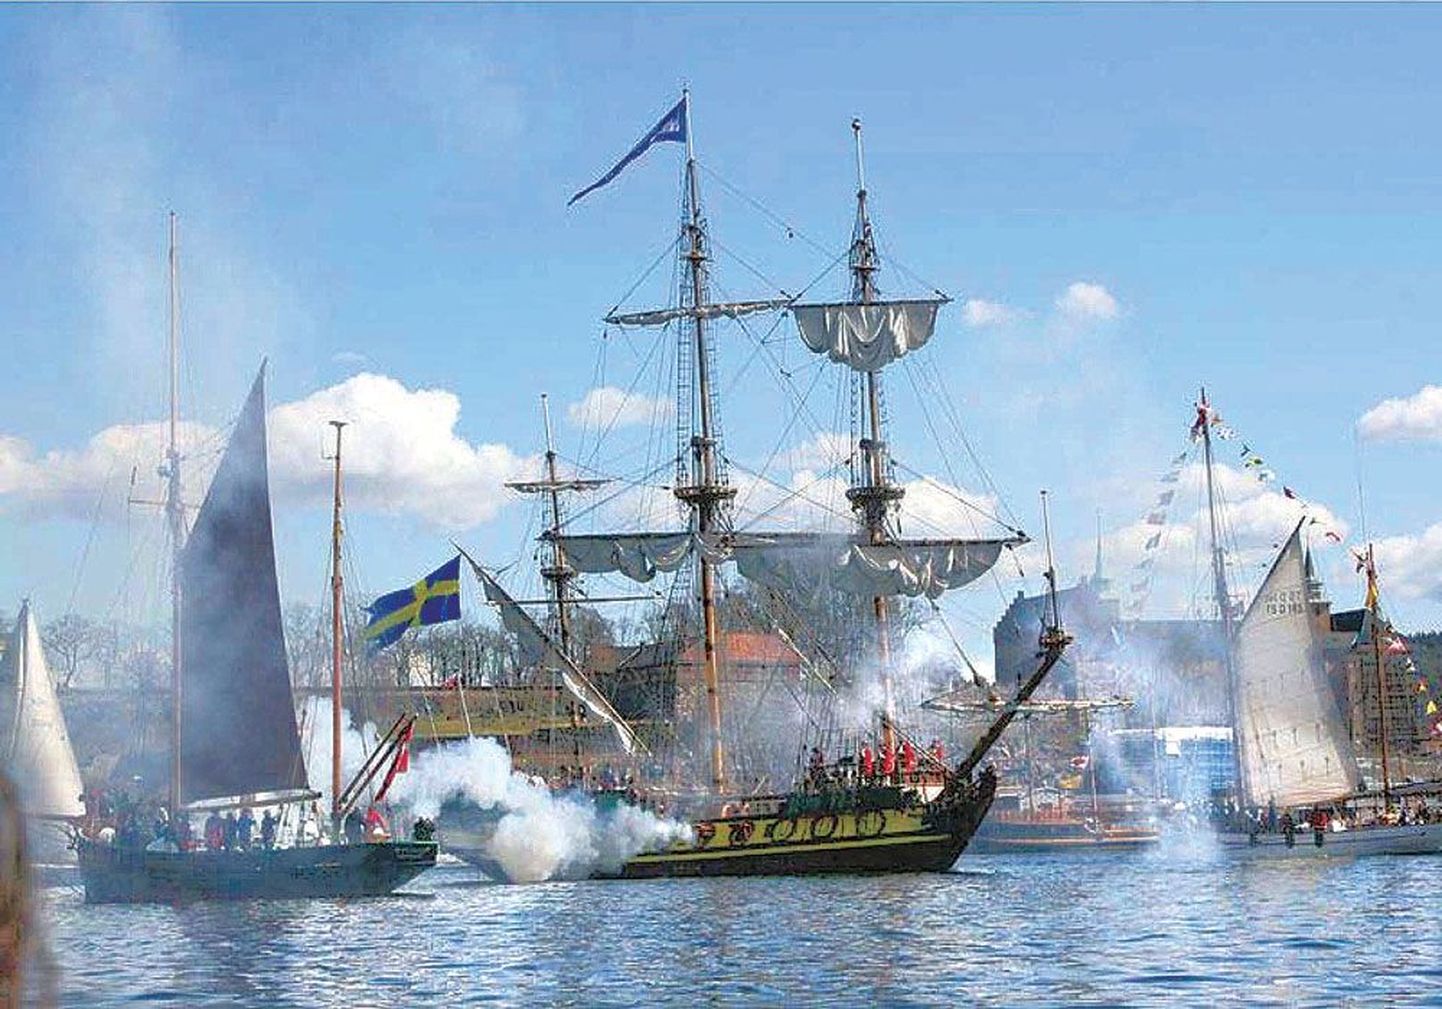 Копия боевого корабля времен Петра I «Штандарт» в представлениях морских сражений принимала участие и раньше.